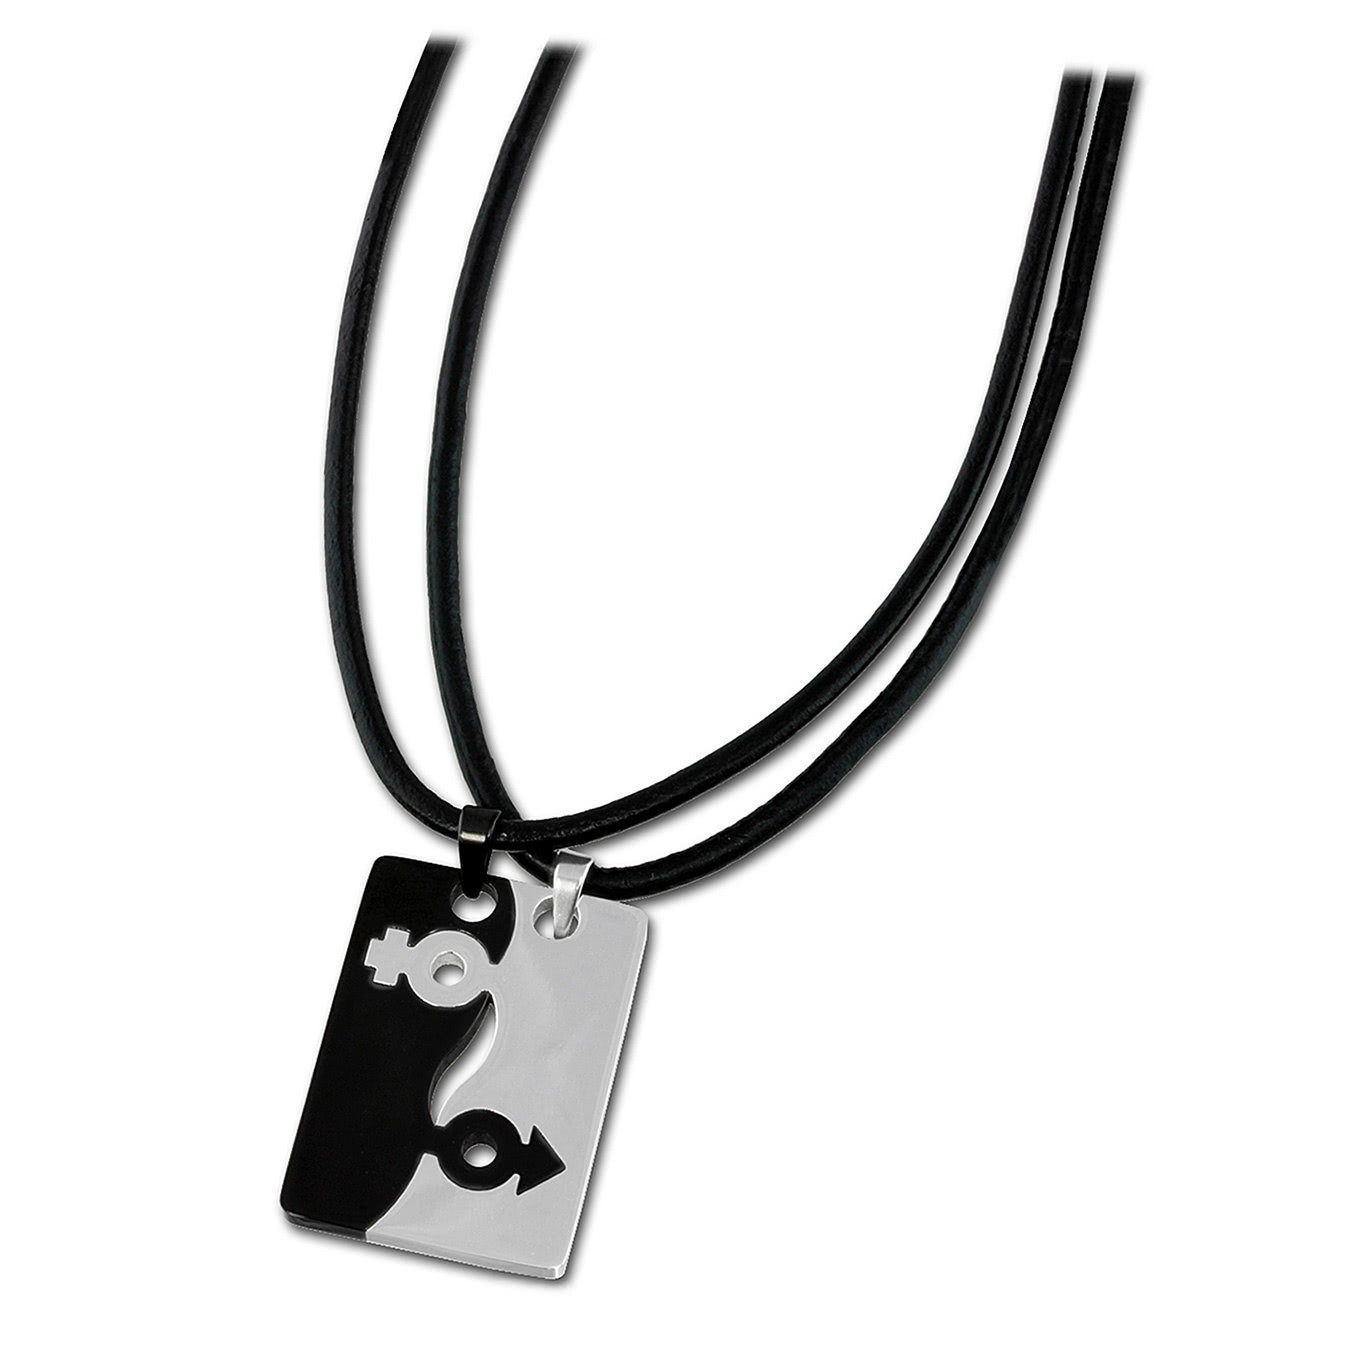 Amello Edelstahlkette Amello Halskette + (Halskette), silber schwarz Damen-Halskette (Stainl glitzer 50cm 5cm ca. Verlängerung, (Sexus) Edelstahl